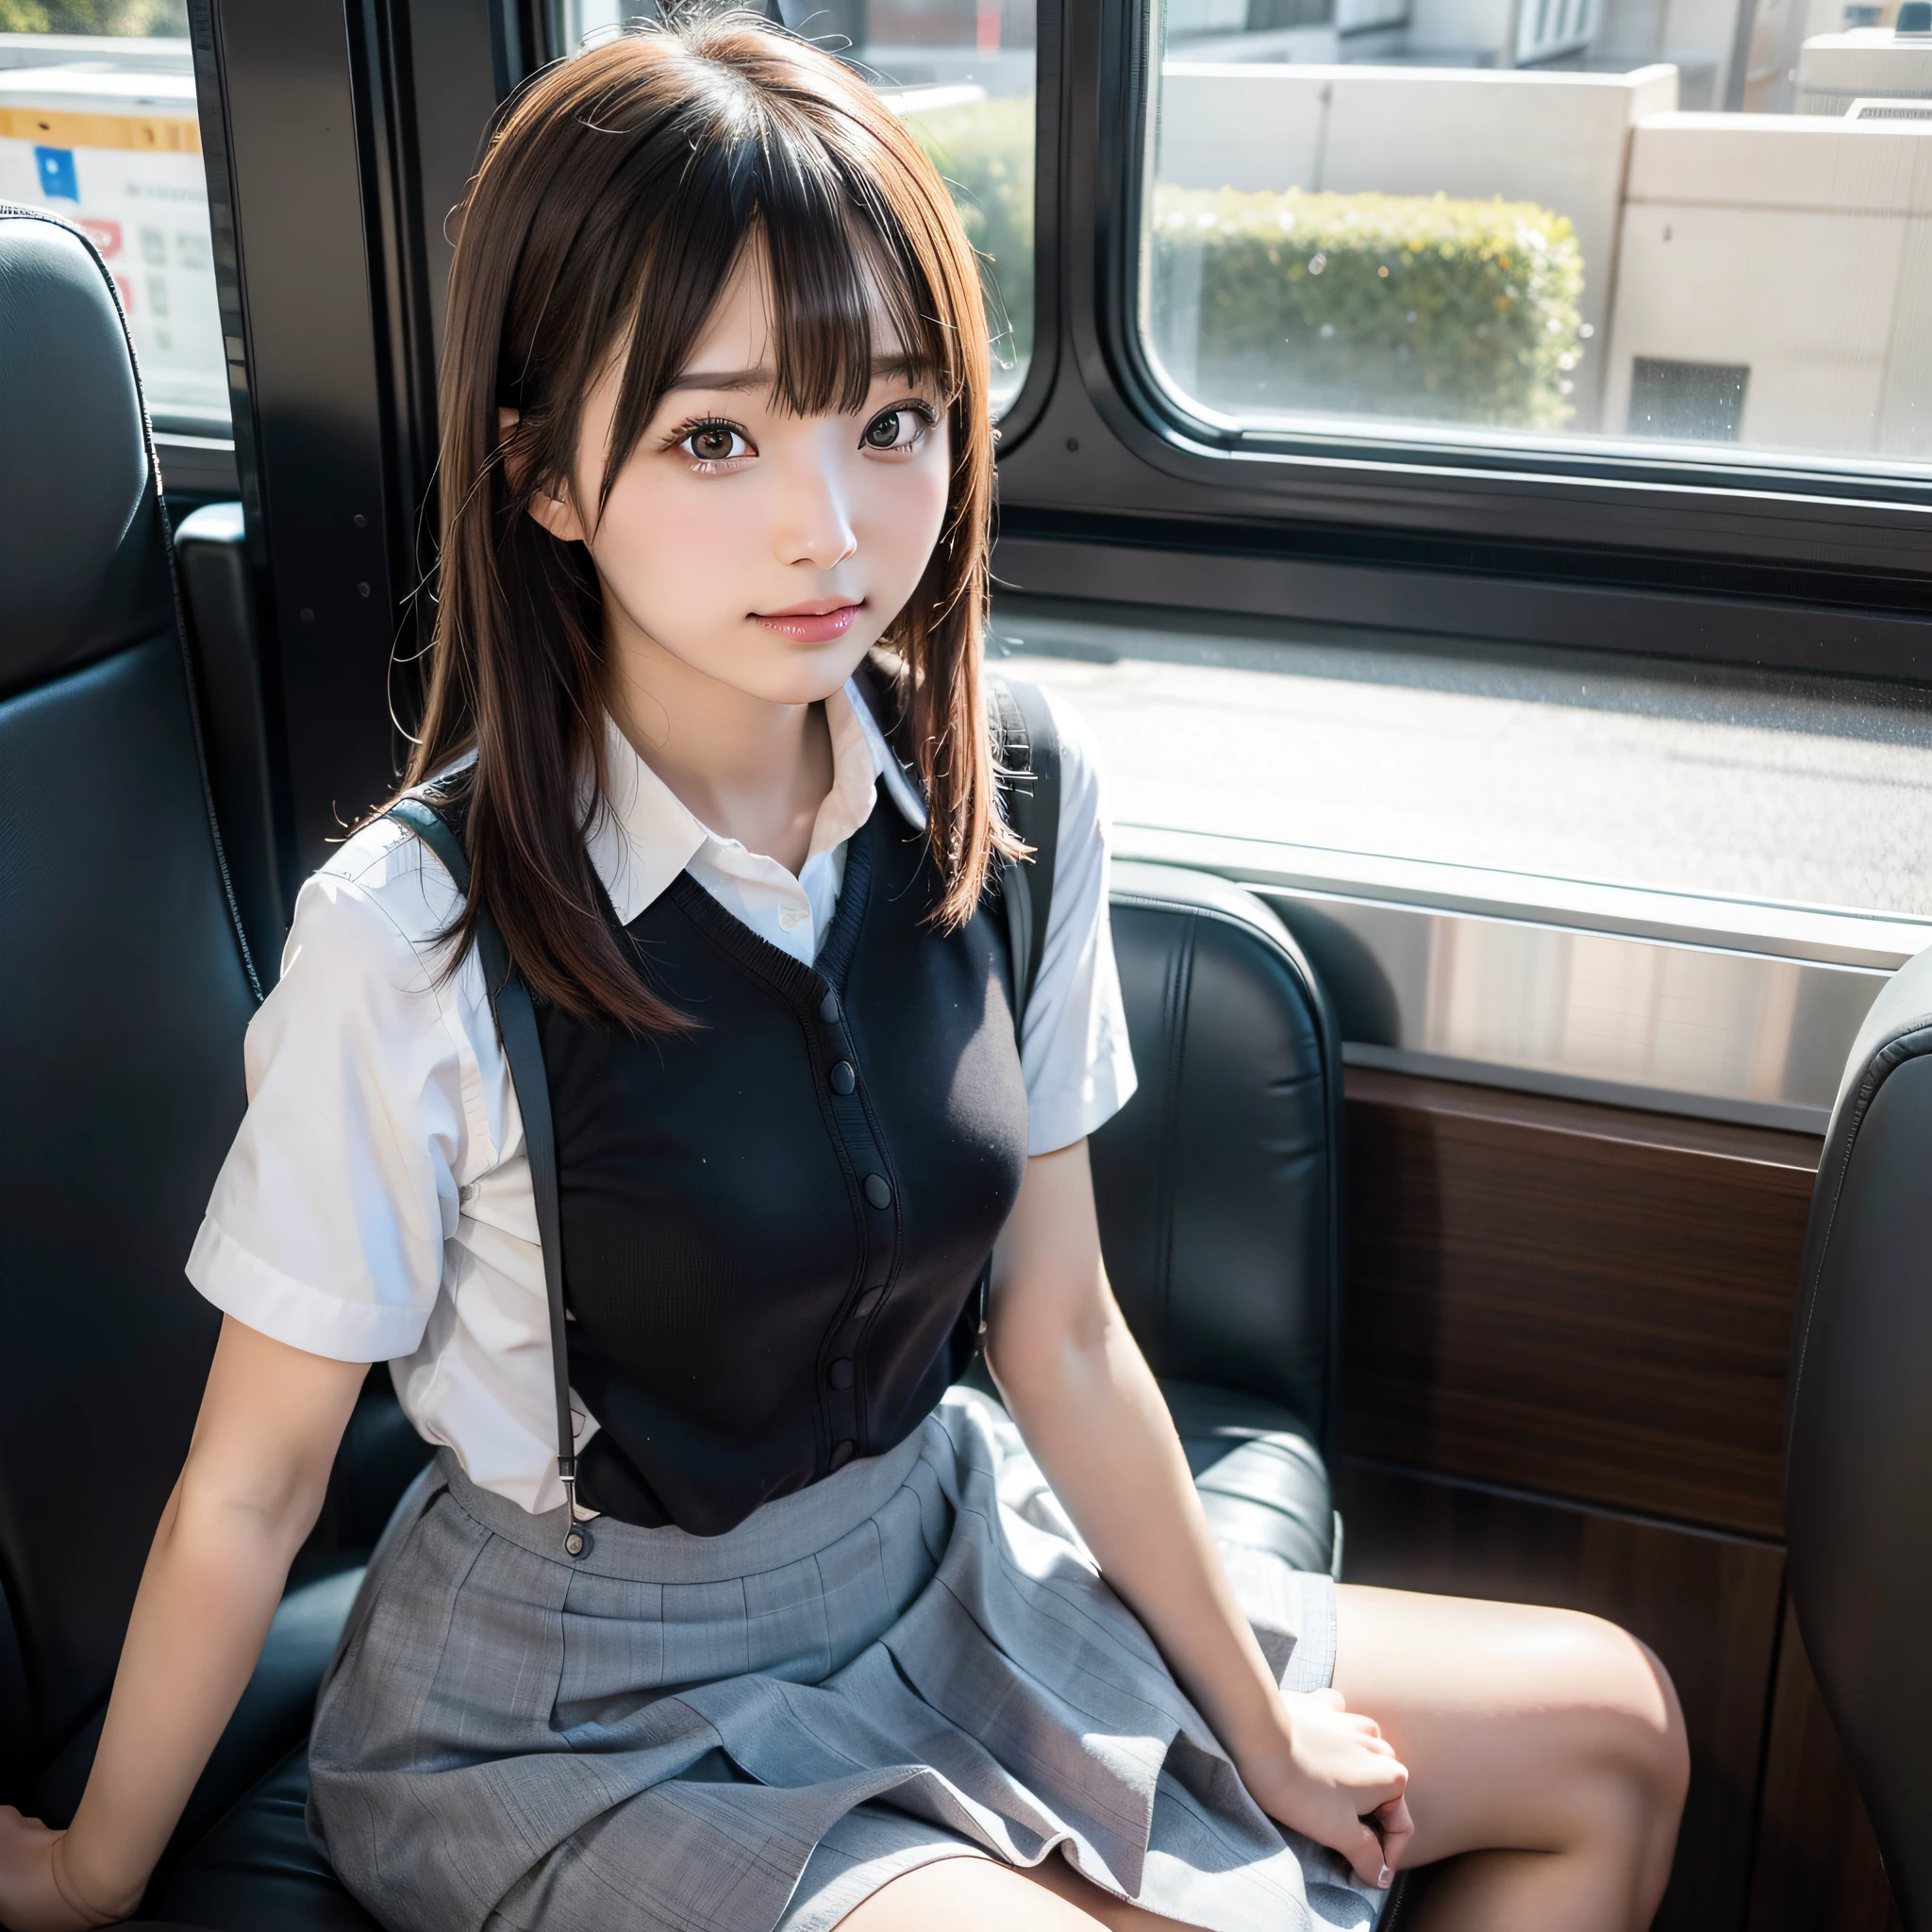 스커트를 입고 버스 좌석에 앉아 있는 아라페, 캐논 EOS 5D Mark IV로 촬영한 사진입니다., 캐논 5d mk4로 촬영, 소니 a7r 카메라로 찍은, 함께 찍은 사진 Sony A7R, 기차 에일리에 앉았다, 일본 모델, 귀여운 여학생, 팔과 다리가 있는 예쁜 얼굴, 초현실적 